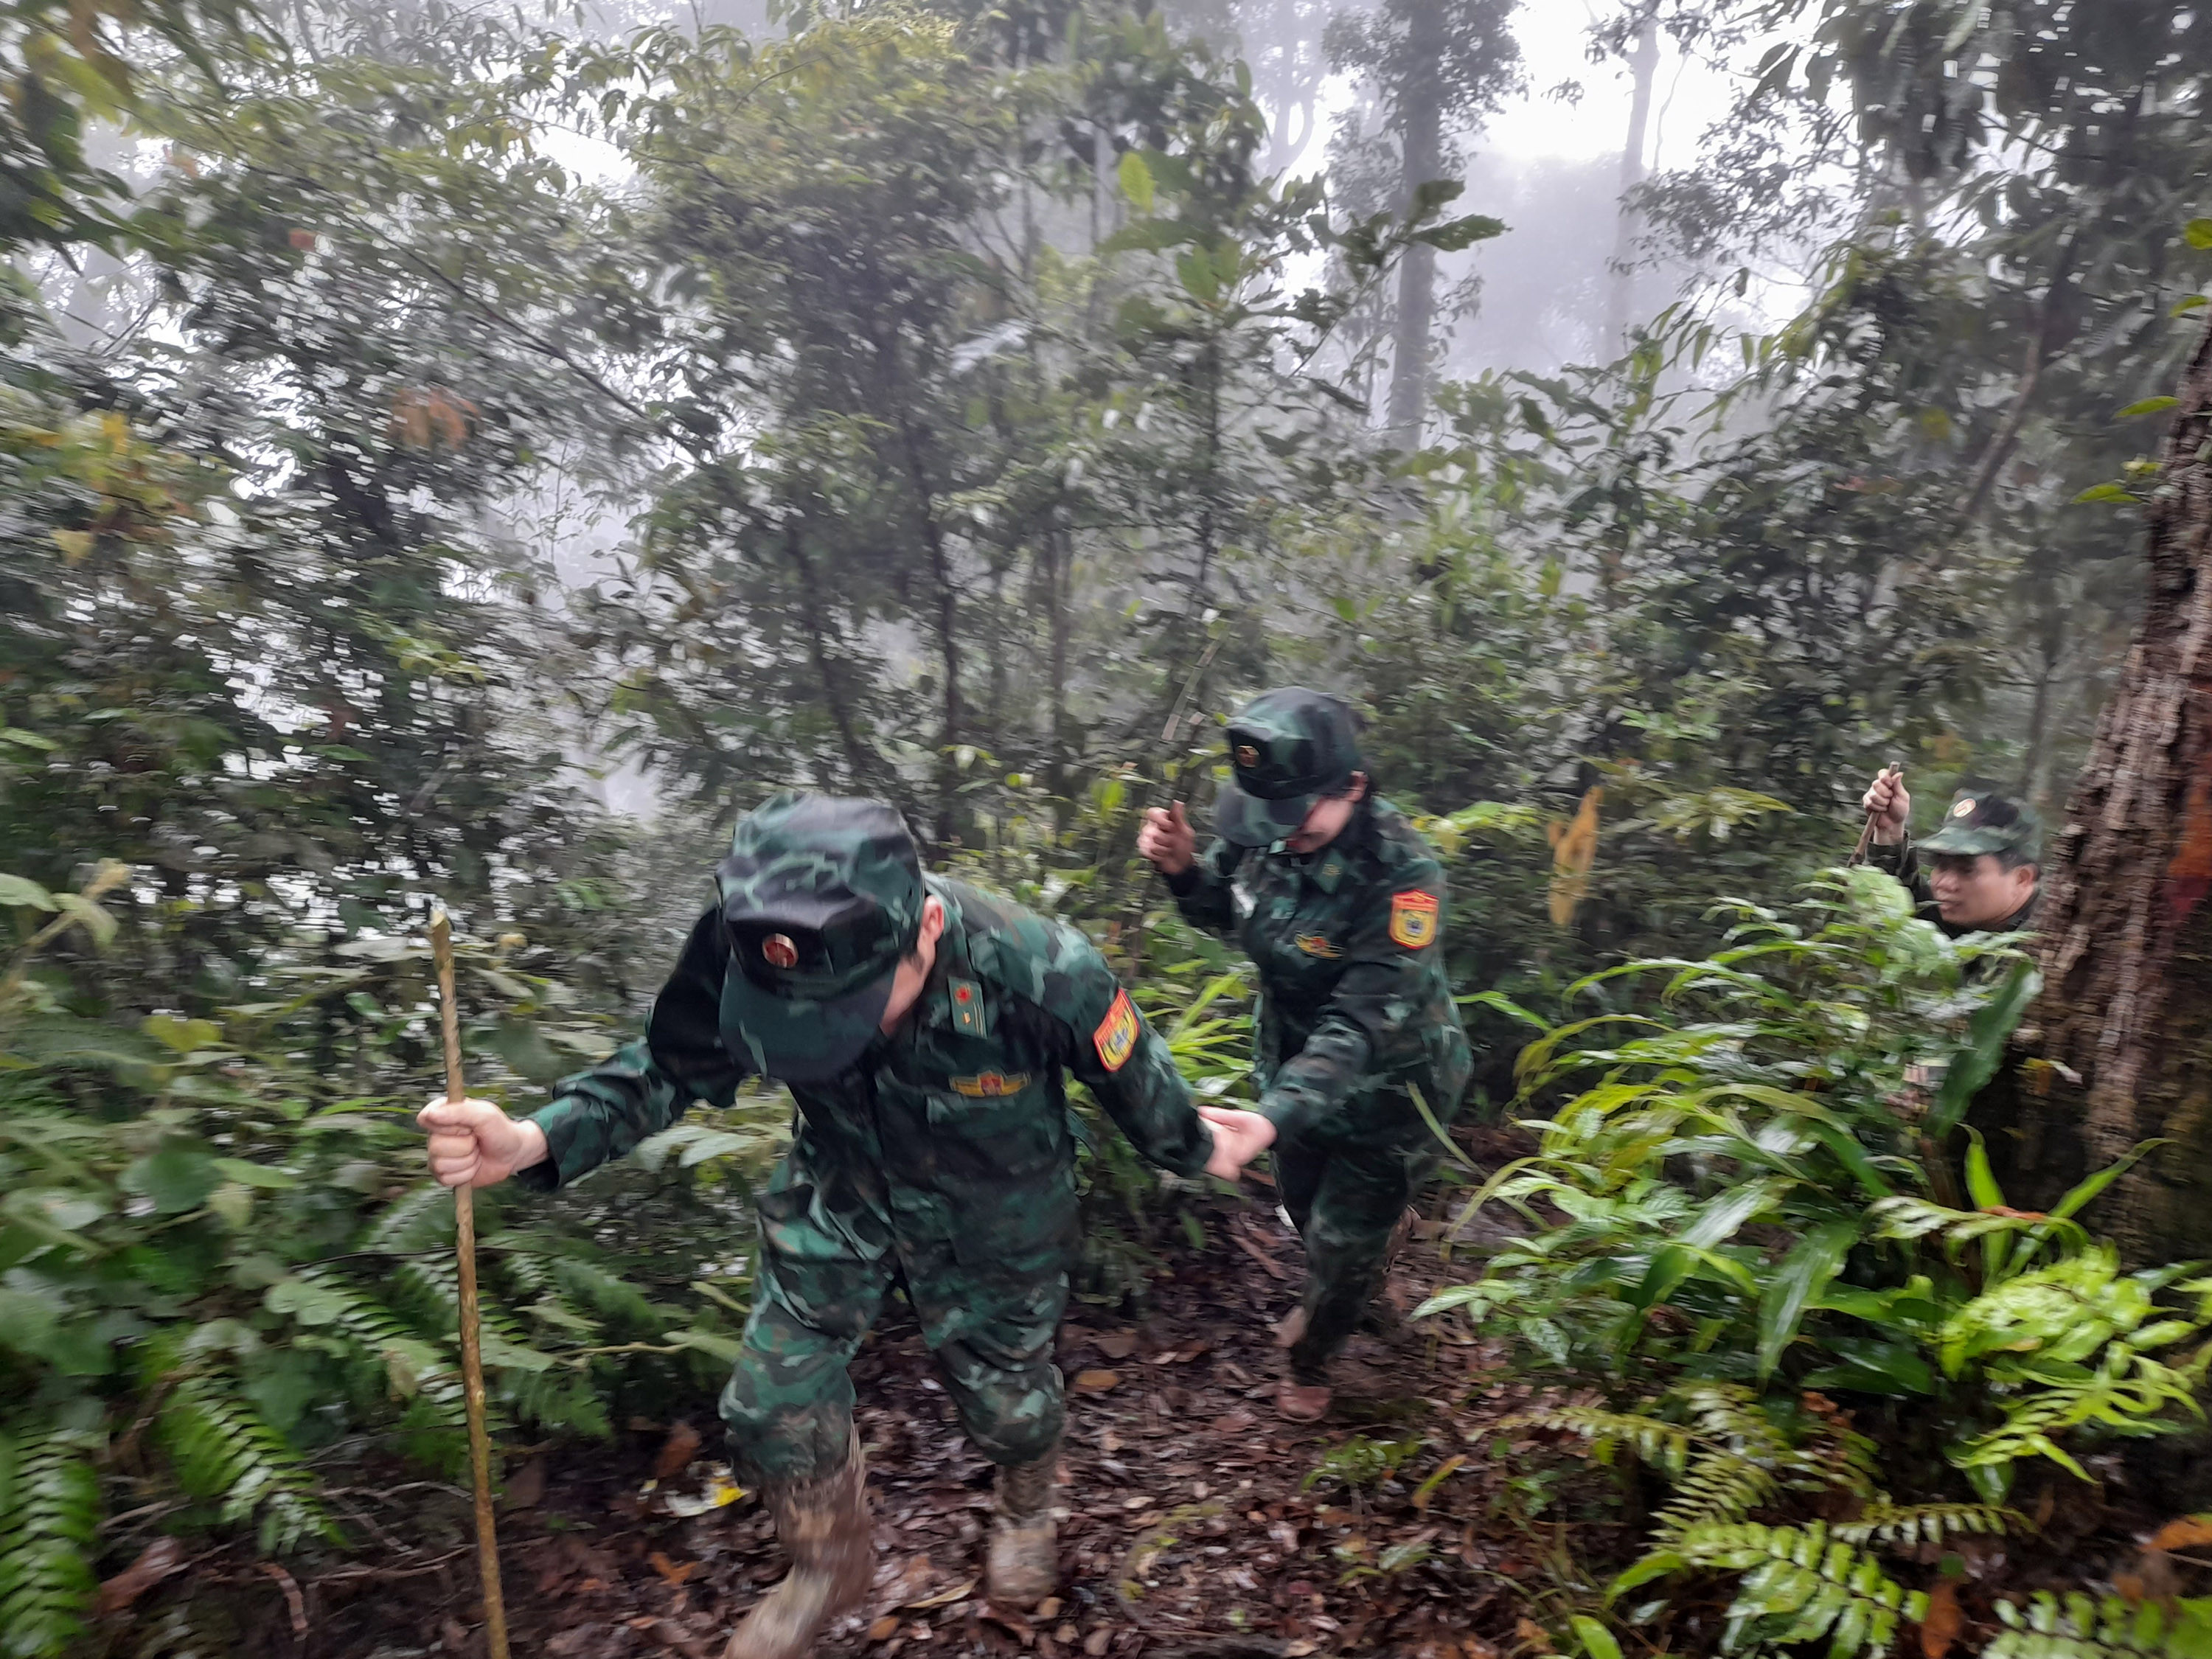 Đoàn công tác băng rừng vượt núi hơn 5 giờ đồng hồ để đến chốt kiểm soát mốc 390. Ảnh: Lữ Phú